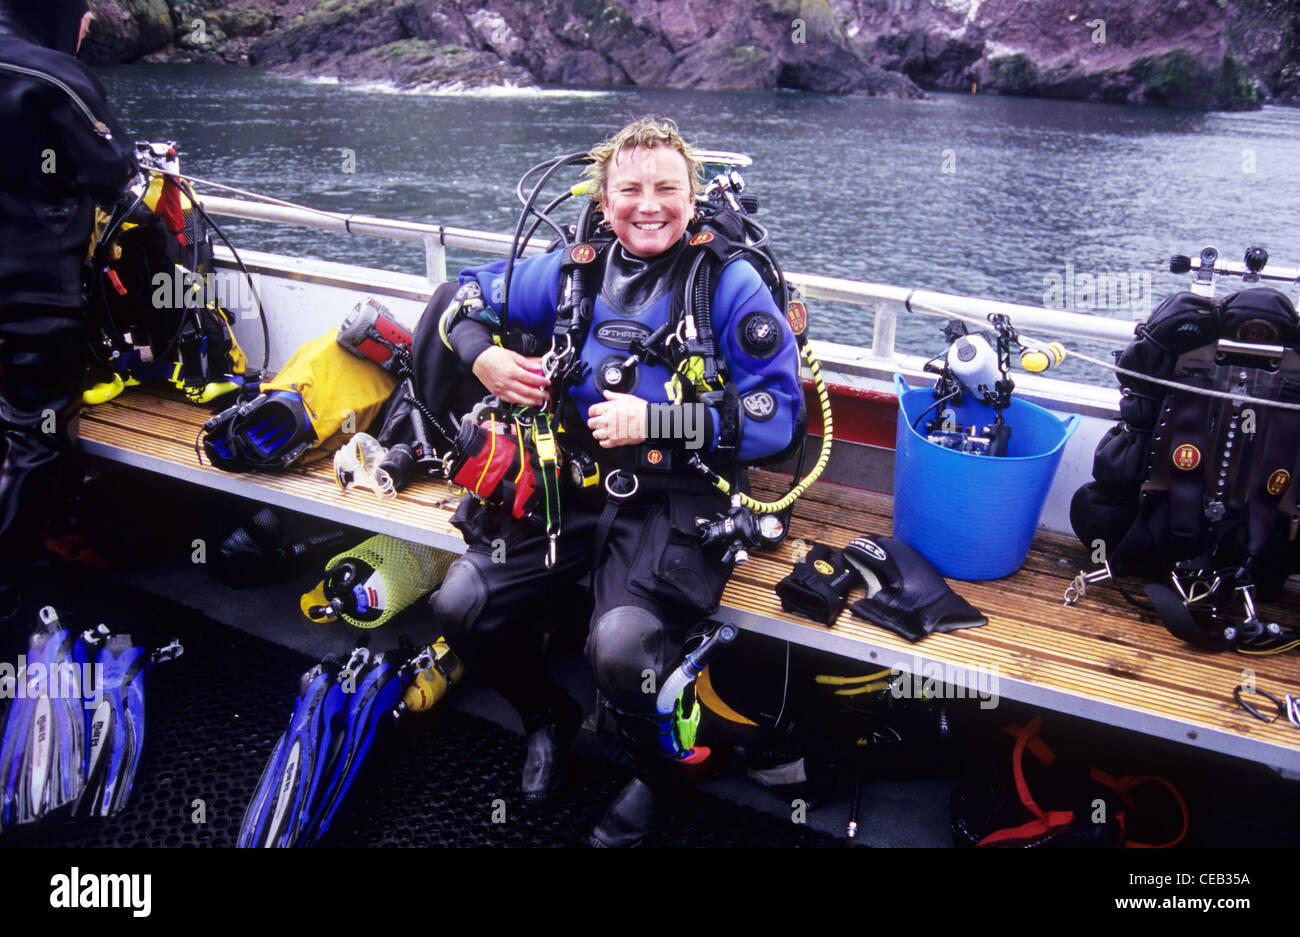 Plongée sous marine à bord de bateau de plongée Wavedancer hors de St Abbs. L'Écosse. Très heureux de plongée sous marine de-kitting après une magnifique plongée. Banque D'Images